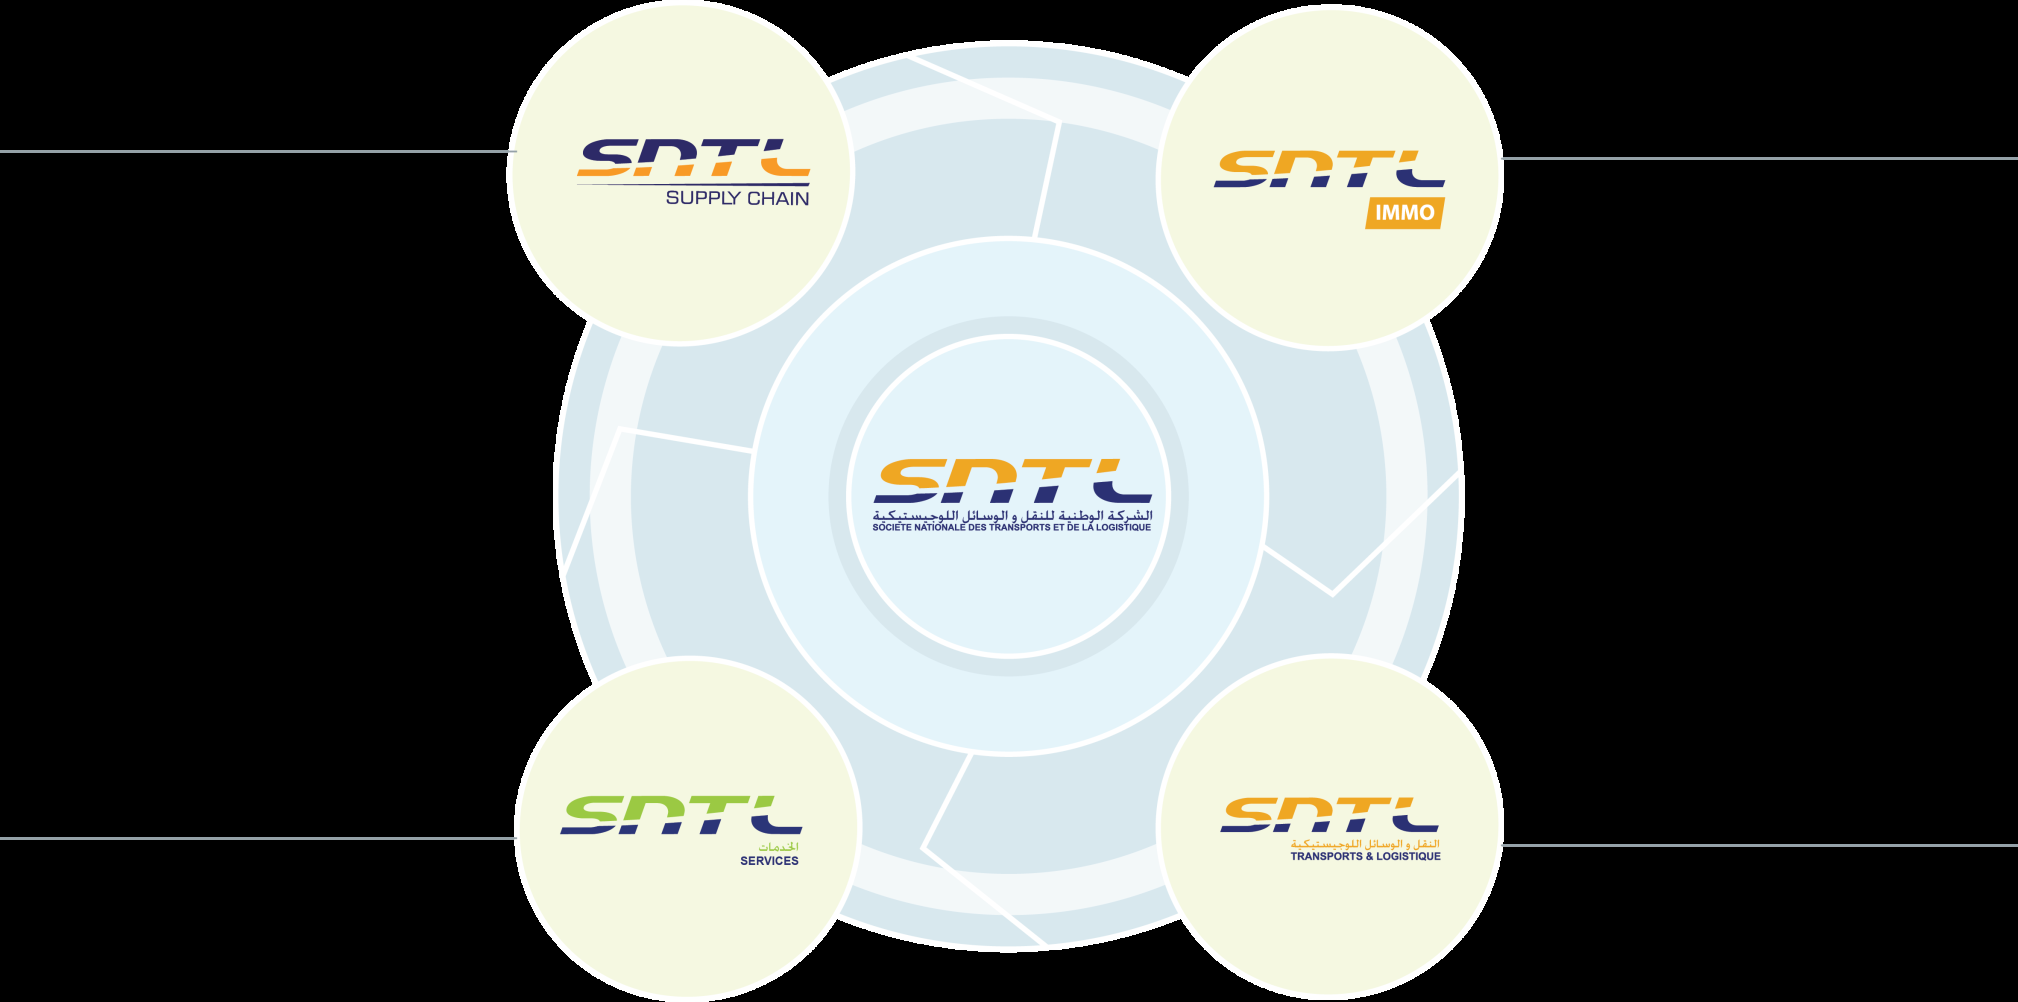 SNTL Groupe Positionnement stratégique sur le marché Supply Chain N 1 dans le transport au Maroc Prestation logistique à forte valeur ajoutée et dans le pilotage des flux TIR & Freight Forwarding